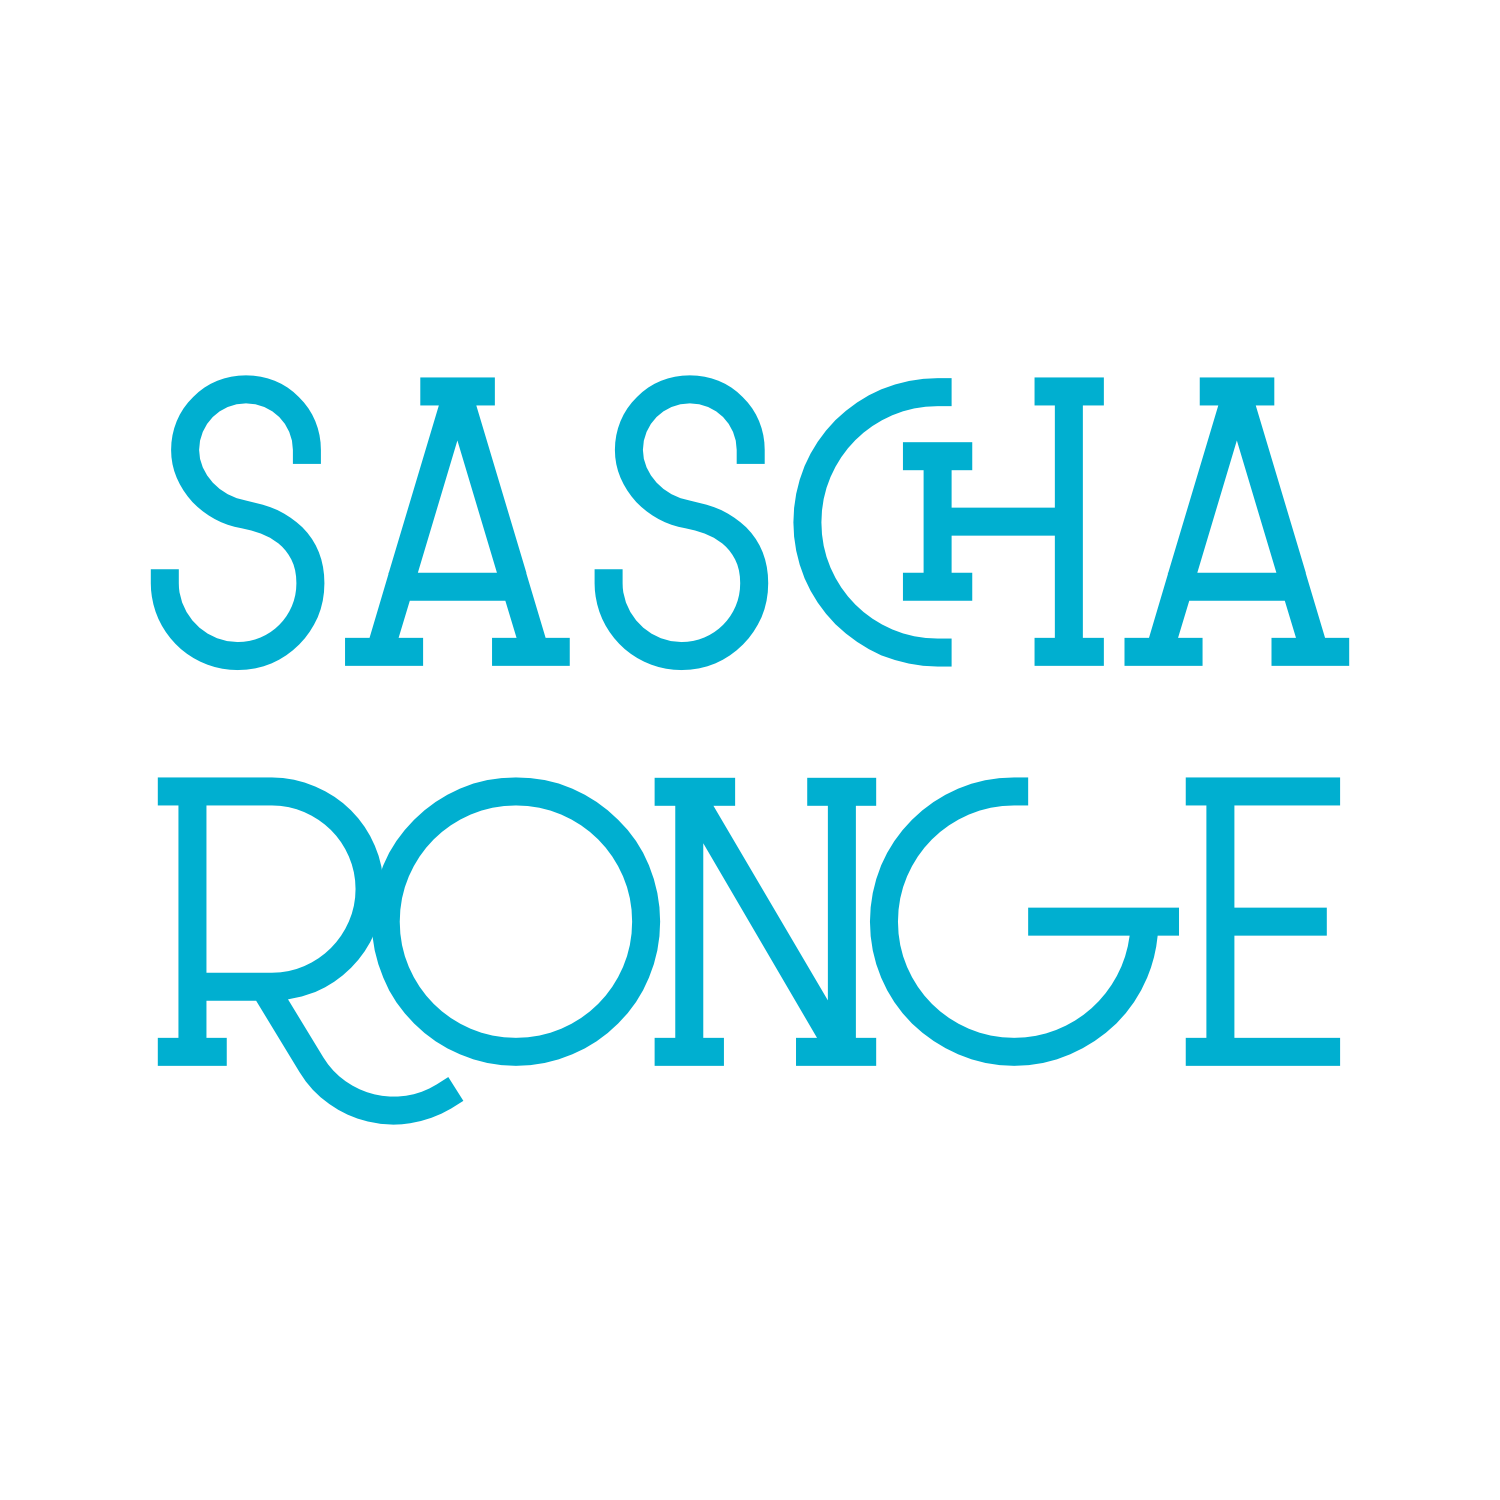 (c) Sascha-ronge.de